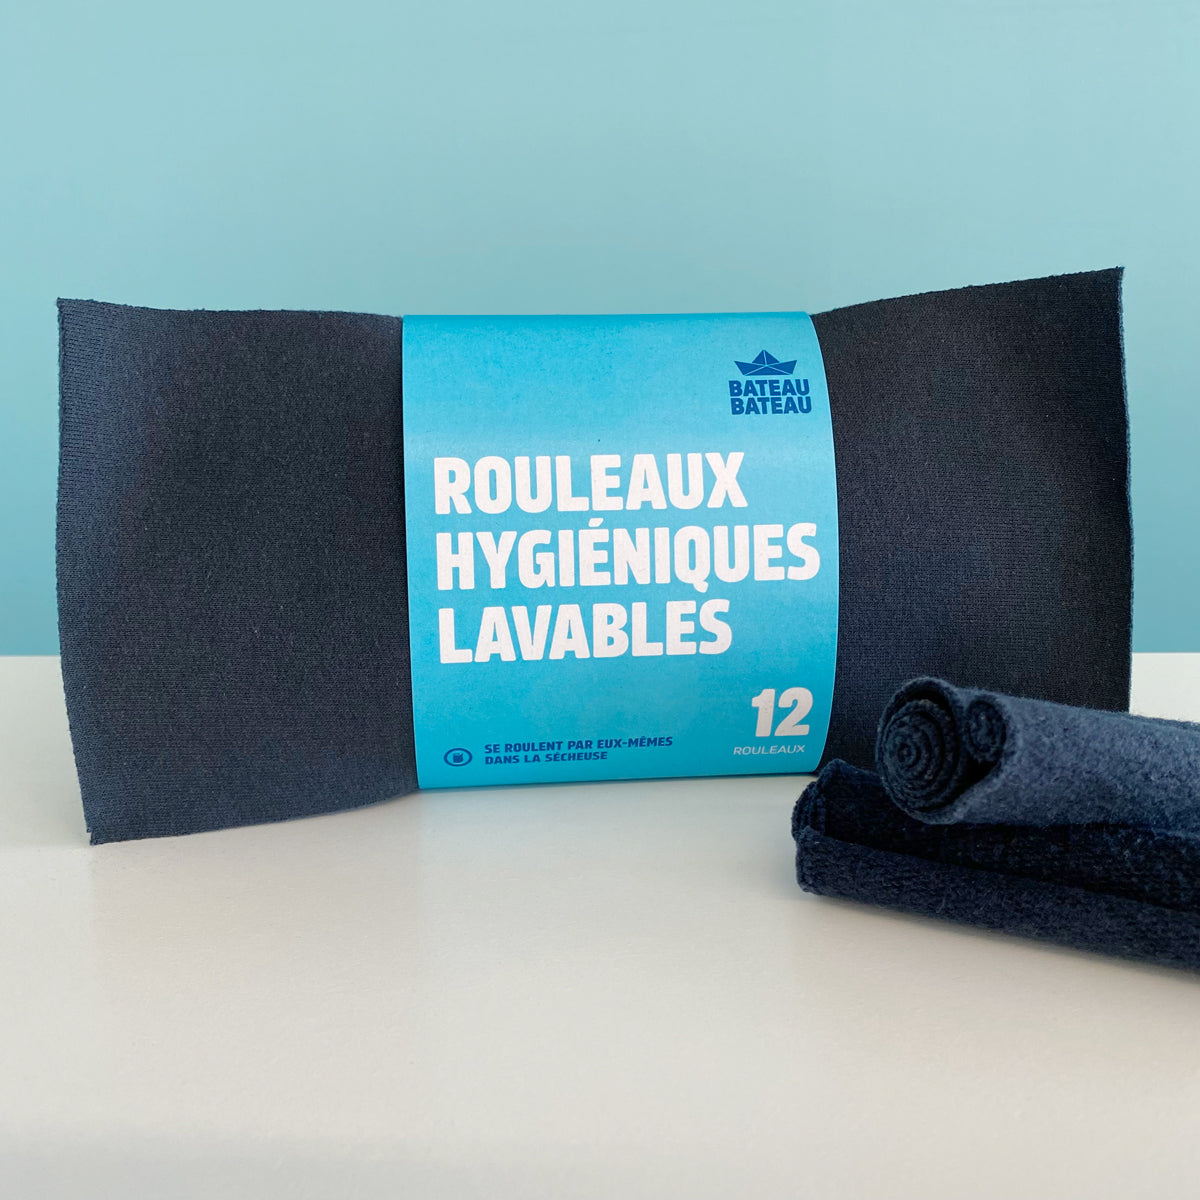 12 rolls of black reusable toilet paper